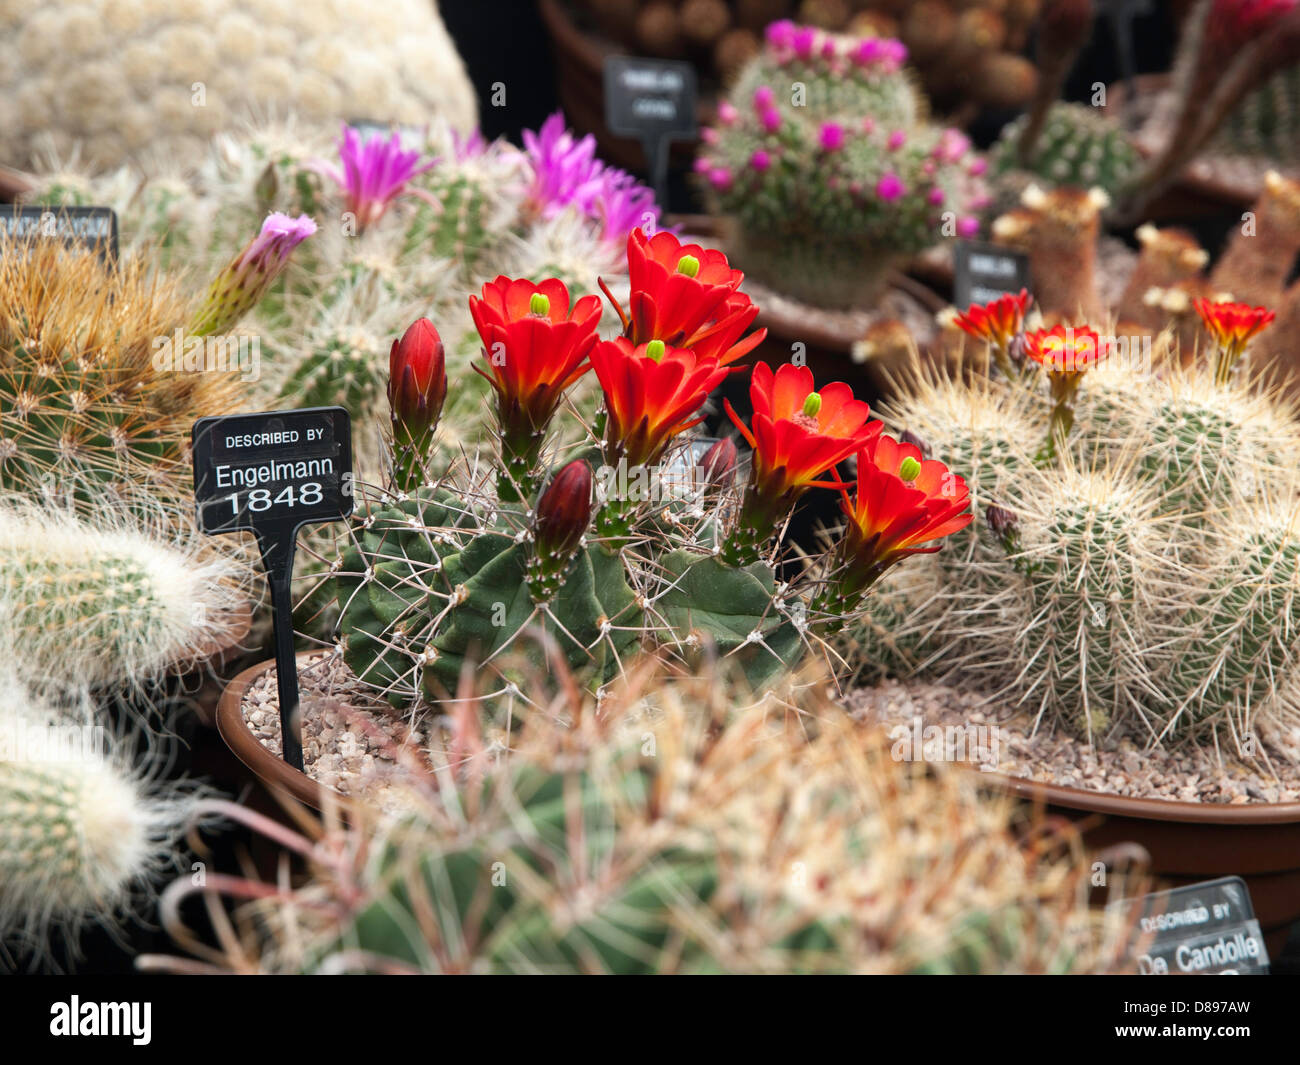 London, UK. 21st May 2013.  Wonderful flowering Cacti on the Southfields Cacti exhibit. London, UK. Credit:  Ian Thwaites / Alamy Live News Stock Photo